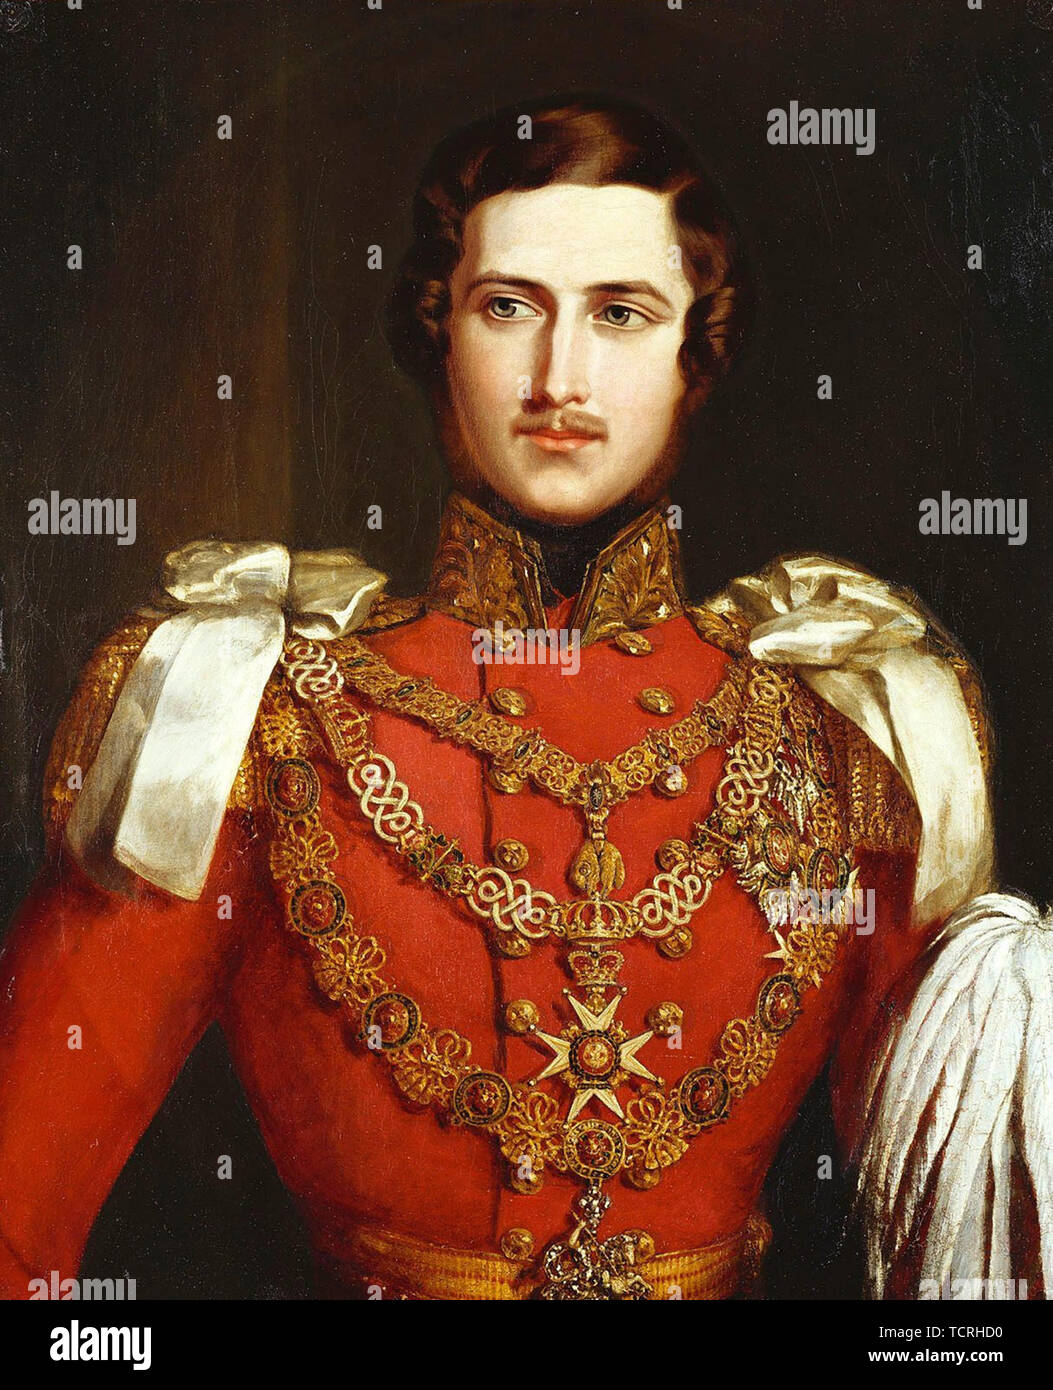 Il principe Alberto di Saxe-Coburg e Gotha (Francis Albert Augusto Carlo Emanuele, 1819 - 1861) era il marito della Regina Victoria. Ritratto di Giovanni Pernice, 1840 Foto Stock